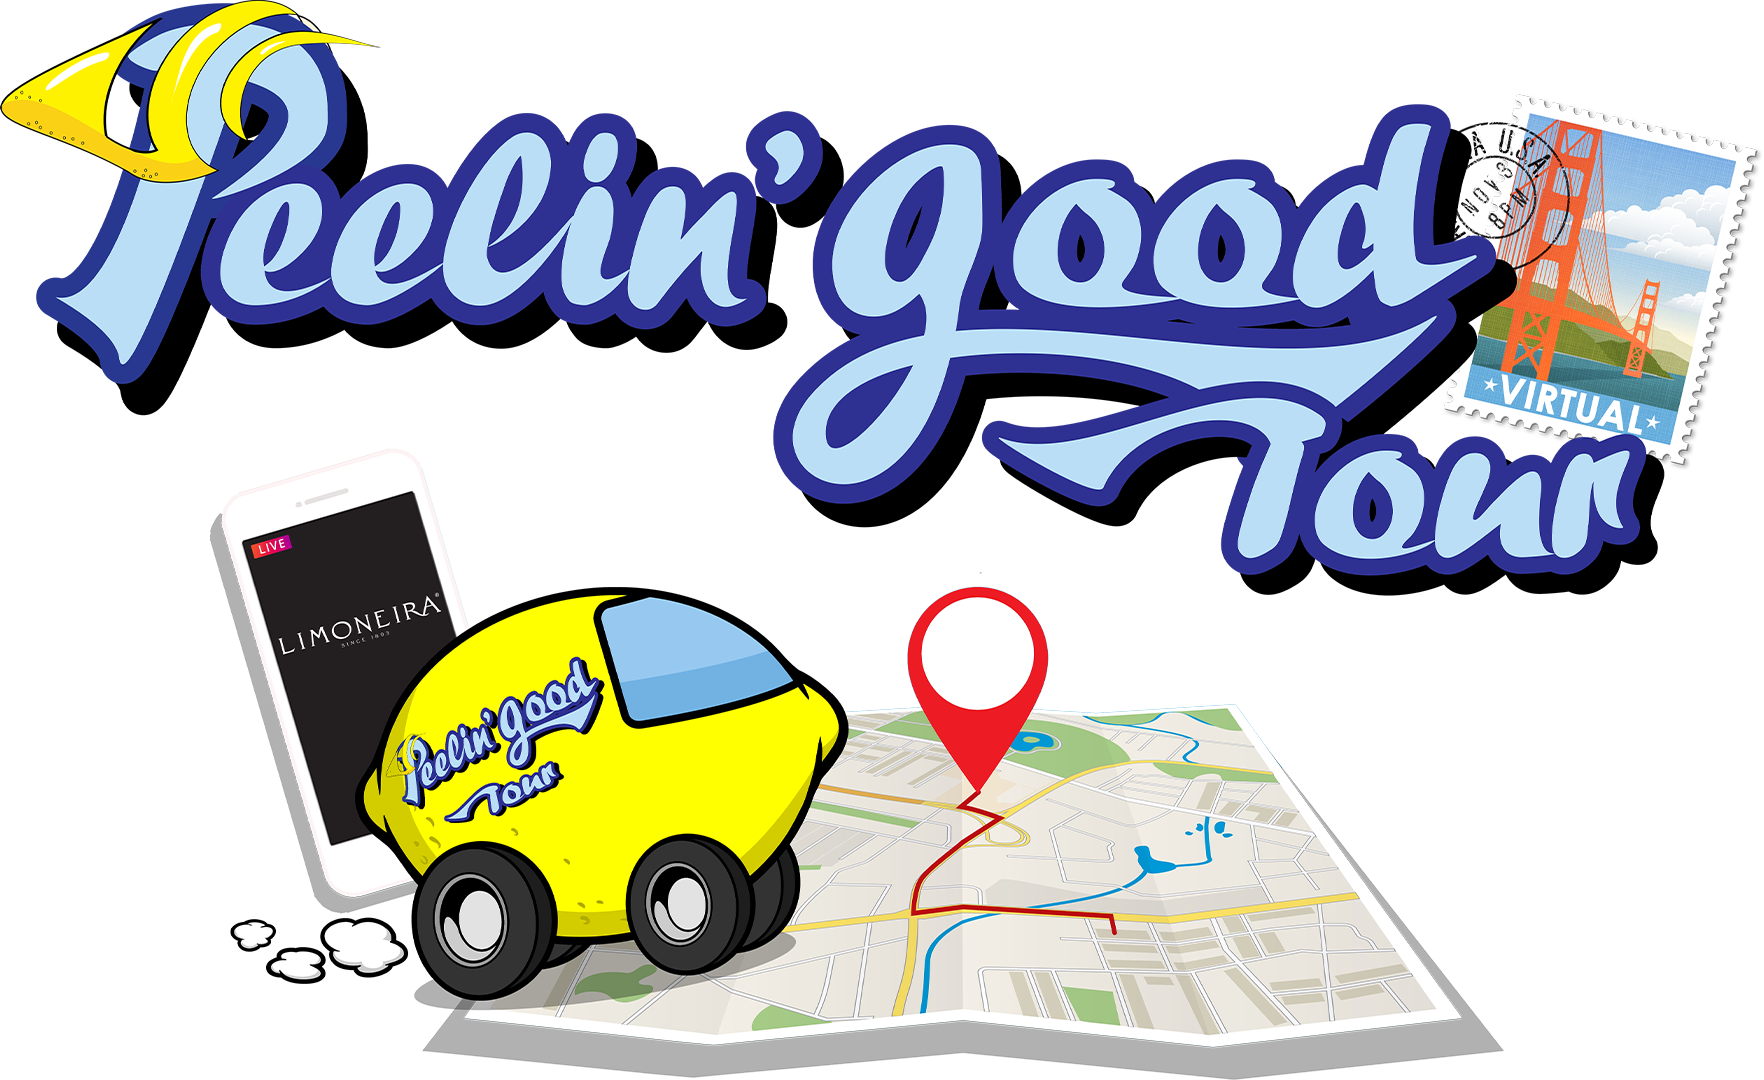 limoneira-peelin-good-tour-logo